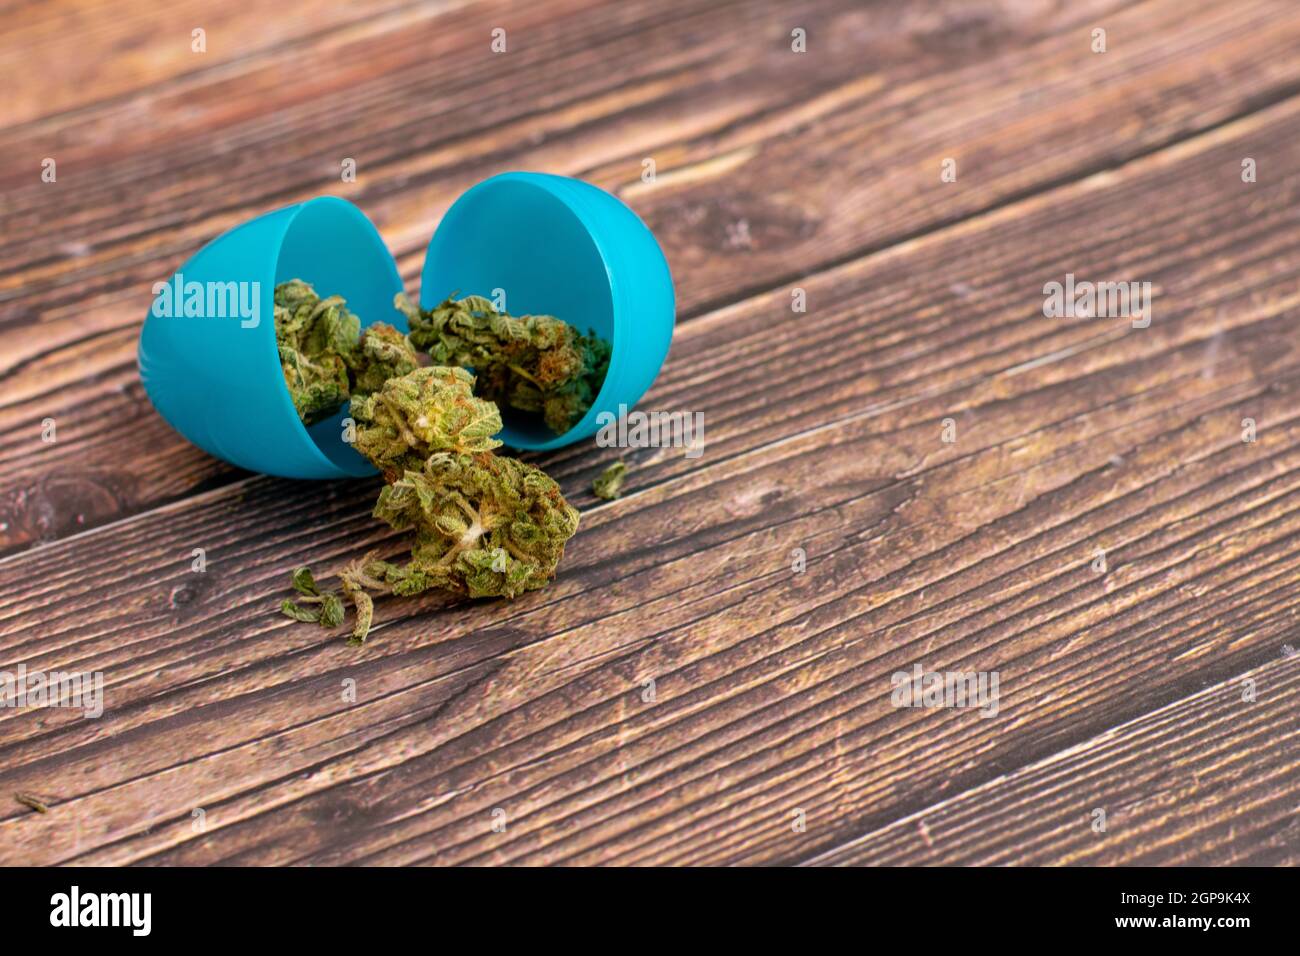 Un uovo di Pasqua di plastica blu con Nugs di Cannabis verde chiaro che  esce da esso su un tavolo di legno Foto stock - Alamy